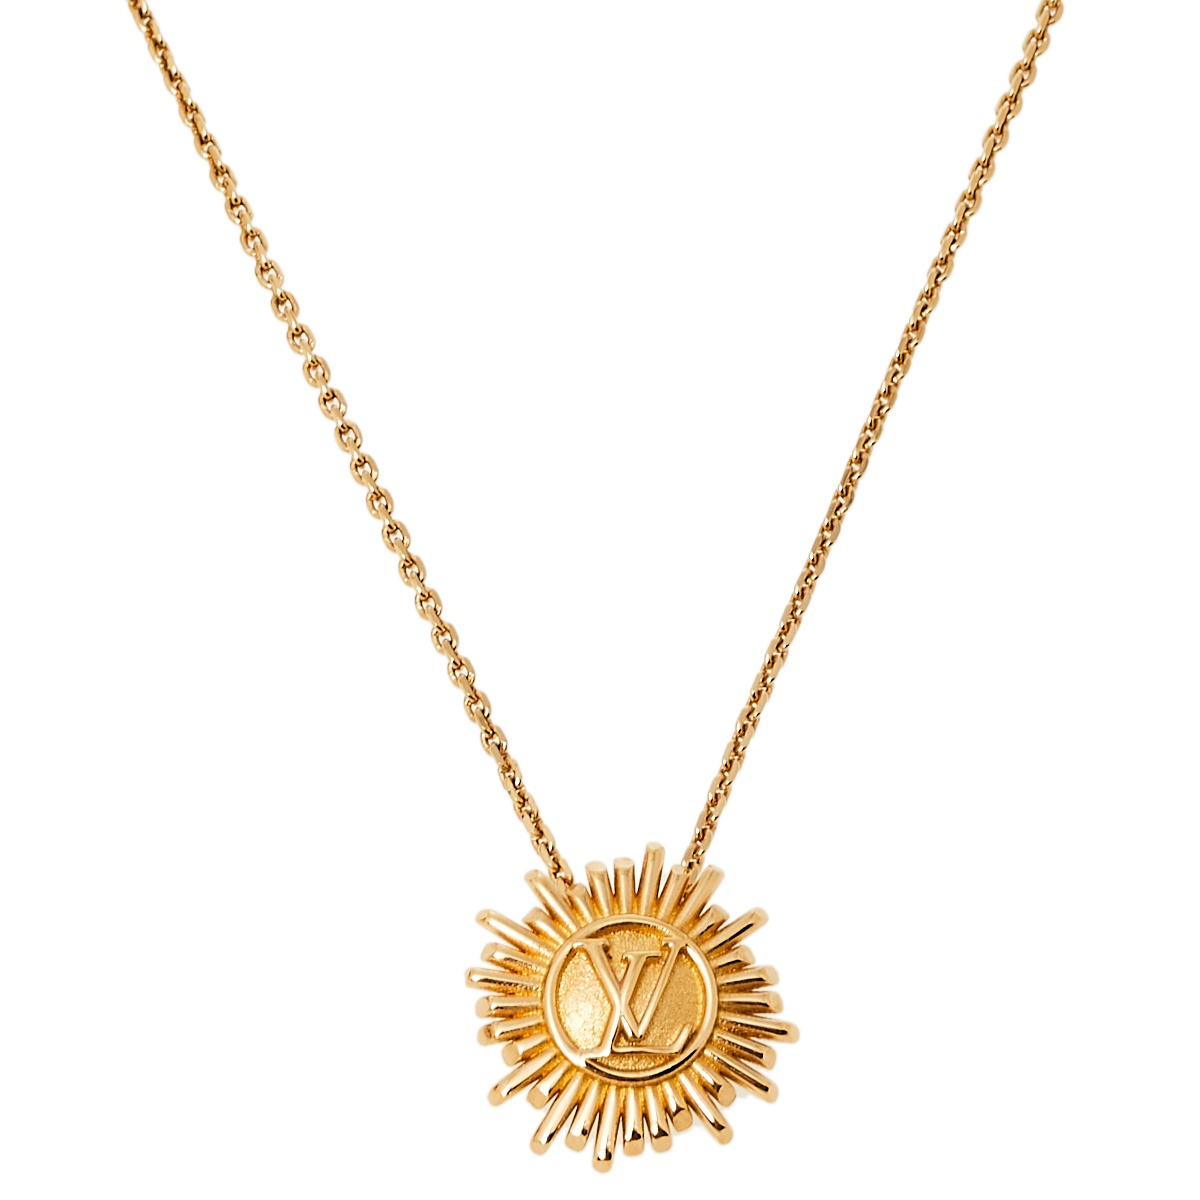 Louis Vuitton Place Vendome Gold Tone Pendant Necklace